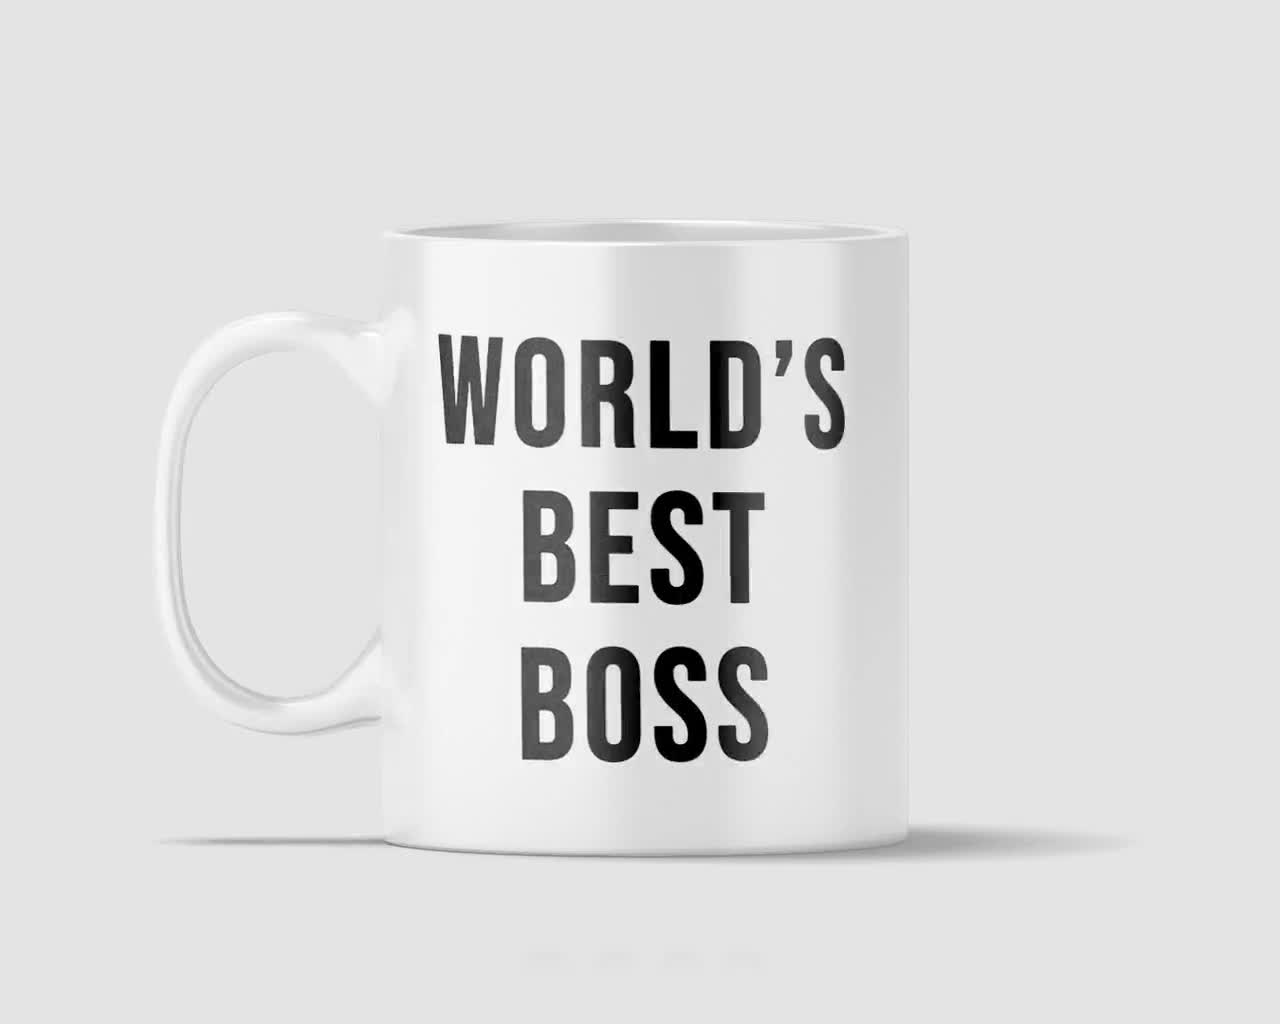 Worlds Best Boss / Dunder Mifflin Mug the Office Mug 2 Sided